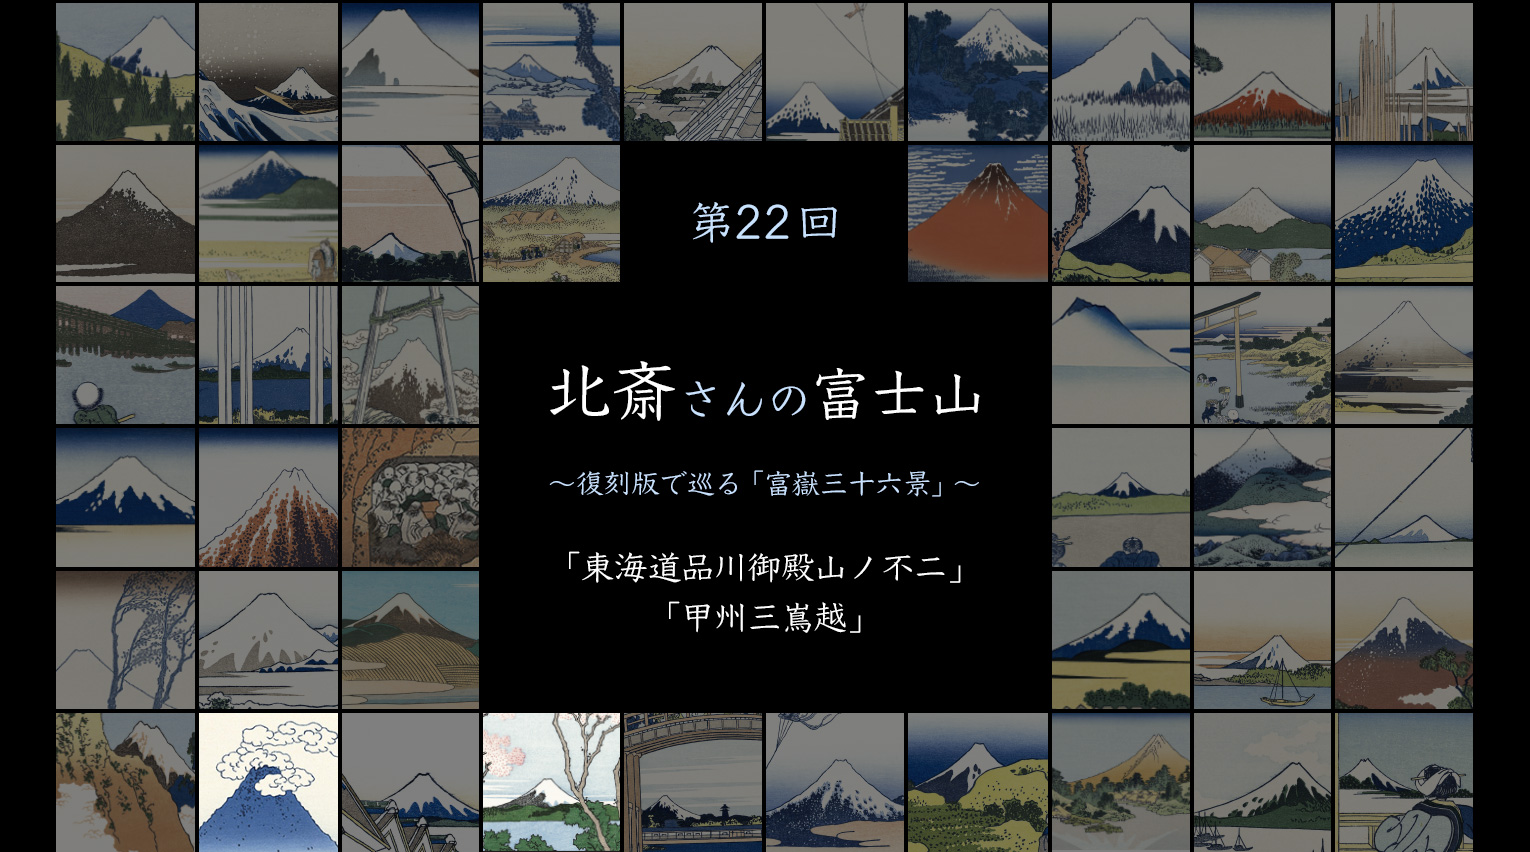 北斎さんの富士山 〜復刻版で見る「富嶽三十六景」〜 (22)【PR】